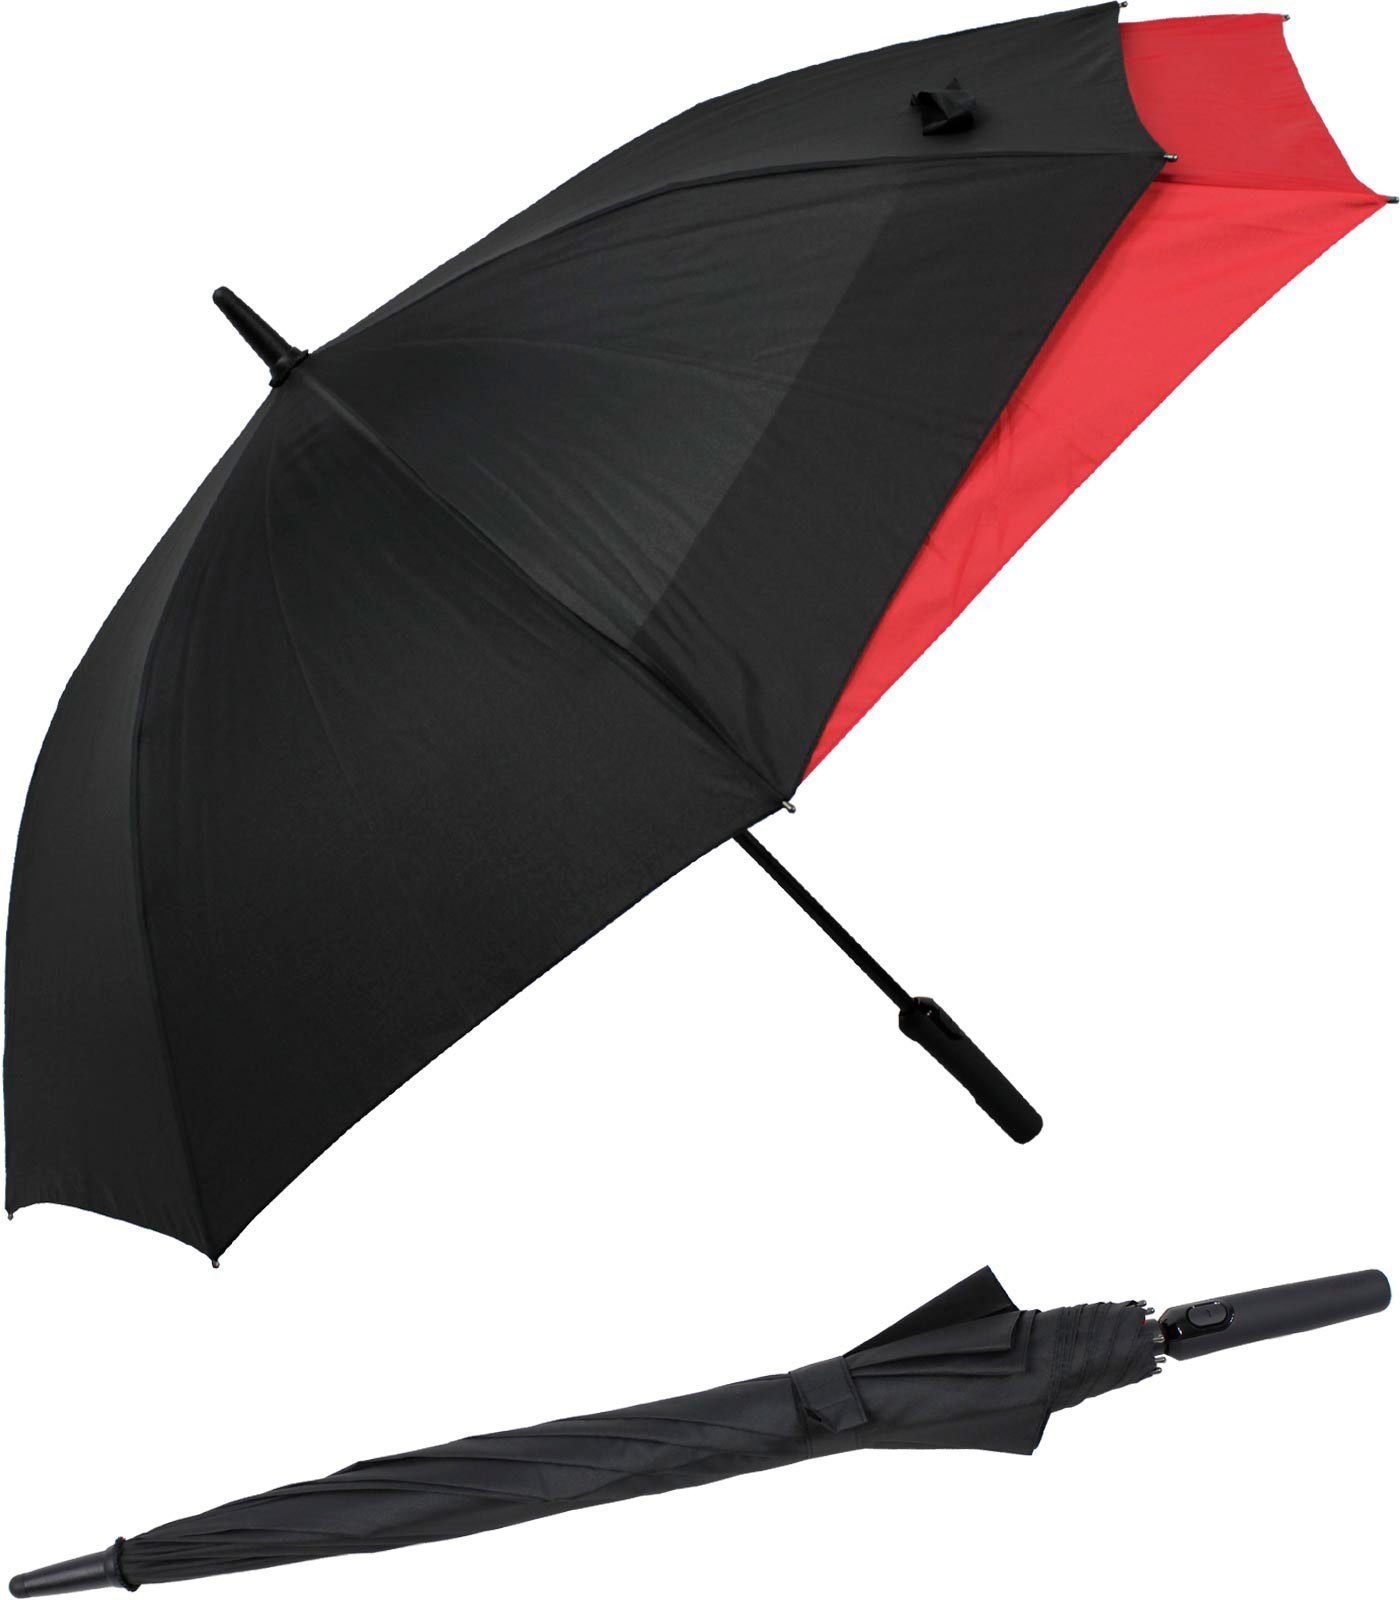 doppler® Langregenschirm Fiberglas mit Auf-Automatik - Move to XL, vergrößert sich beim Öffnen für mehr Schutz vor Regen schwarz-rot